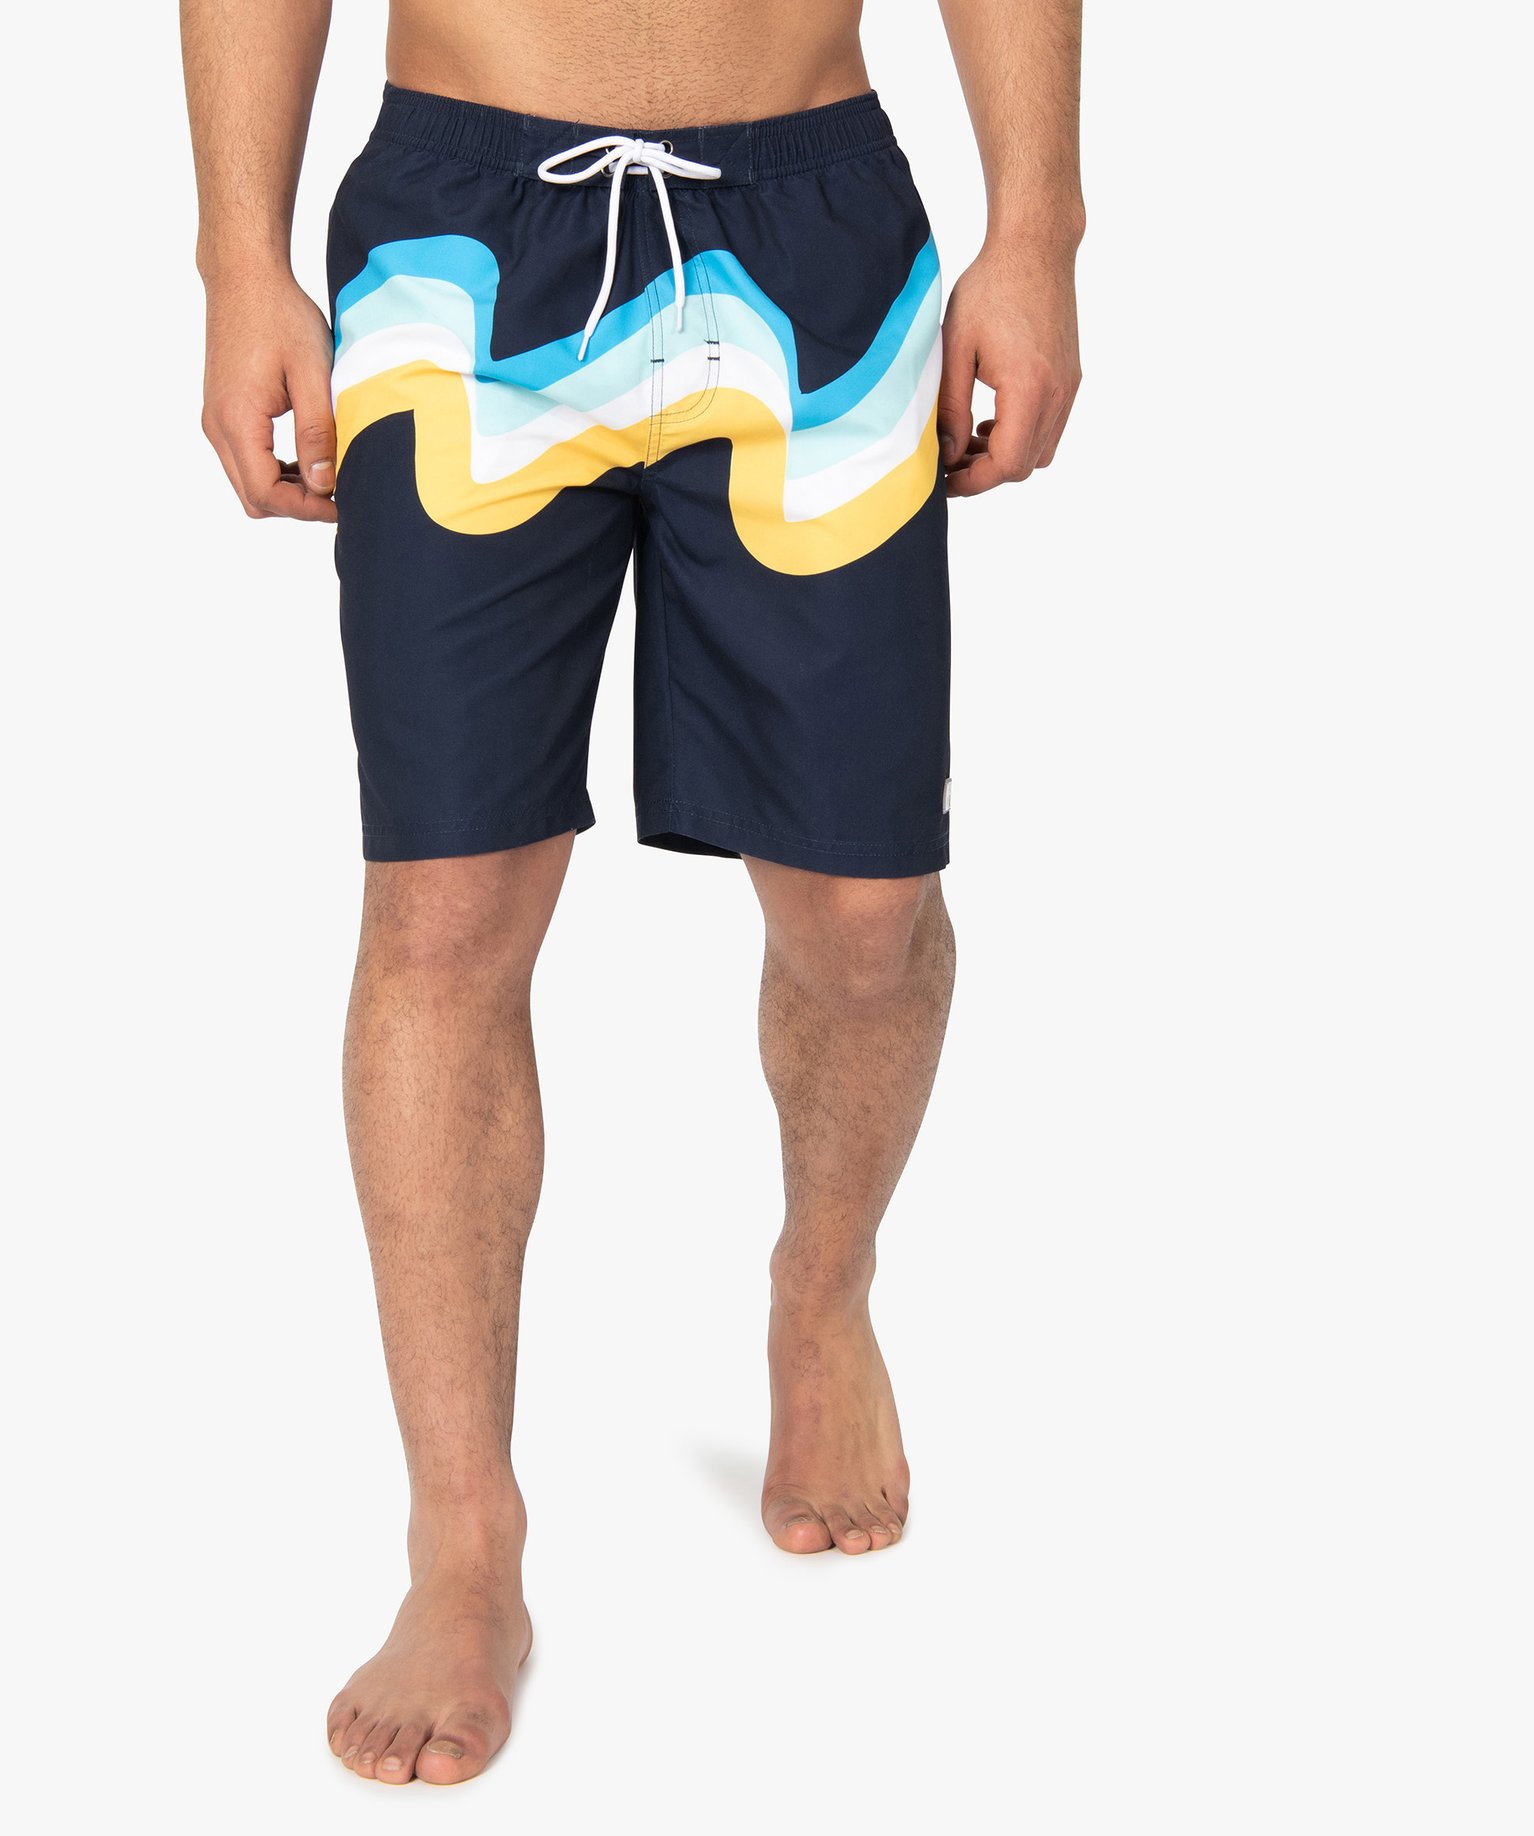 FJ3410 Maillots de bain adidas pour homme en coloris Bleu Homme Vêtements Maillots de bain Shorts de bain 